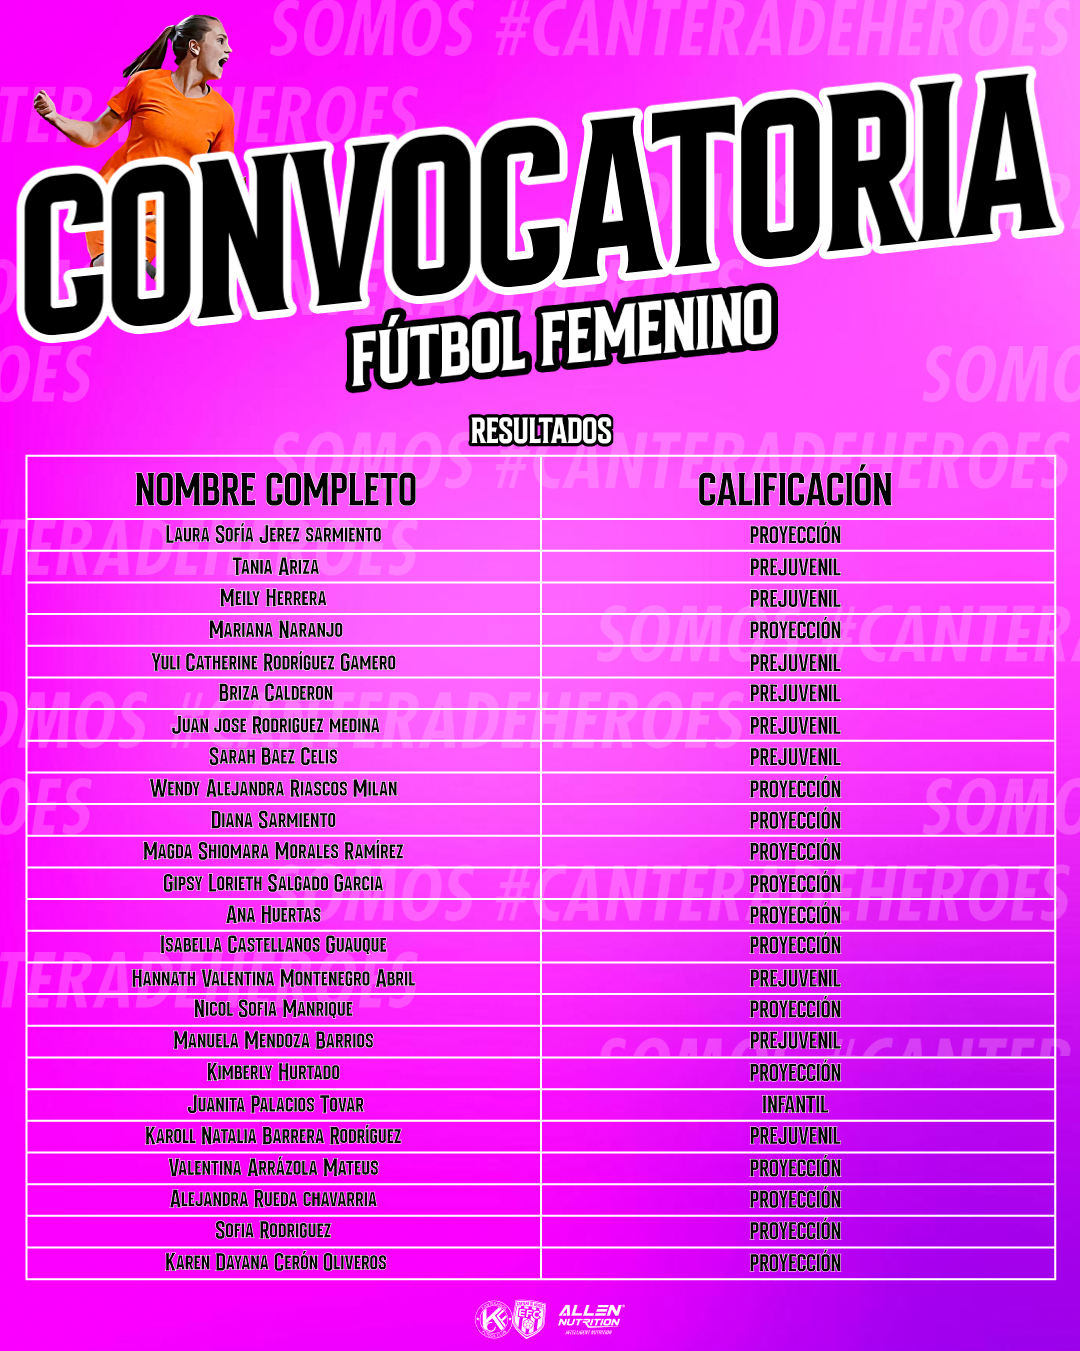 CONVOCATORIAS-FEMENINA-RESULTADOS